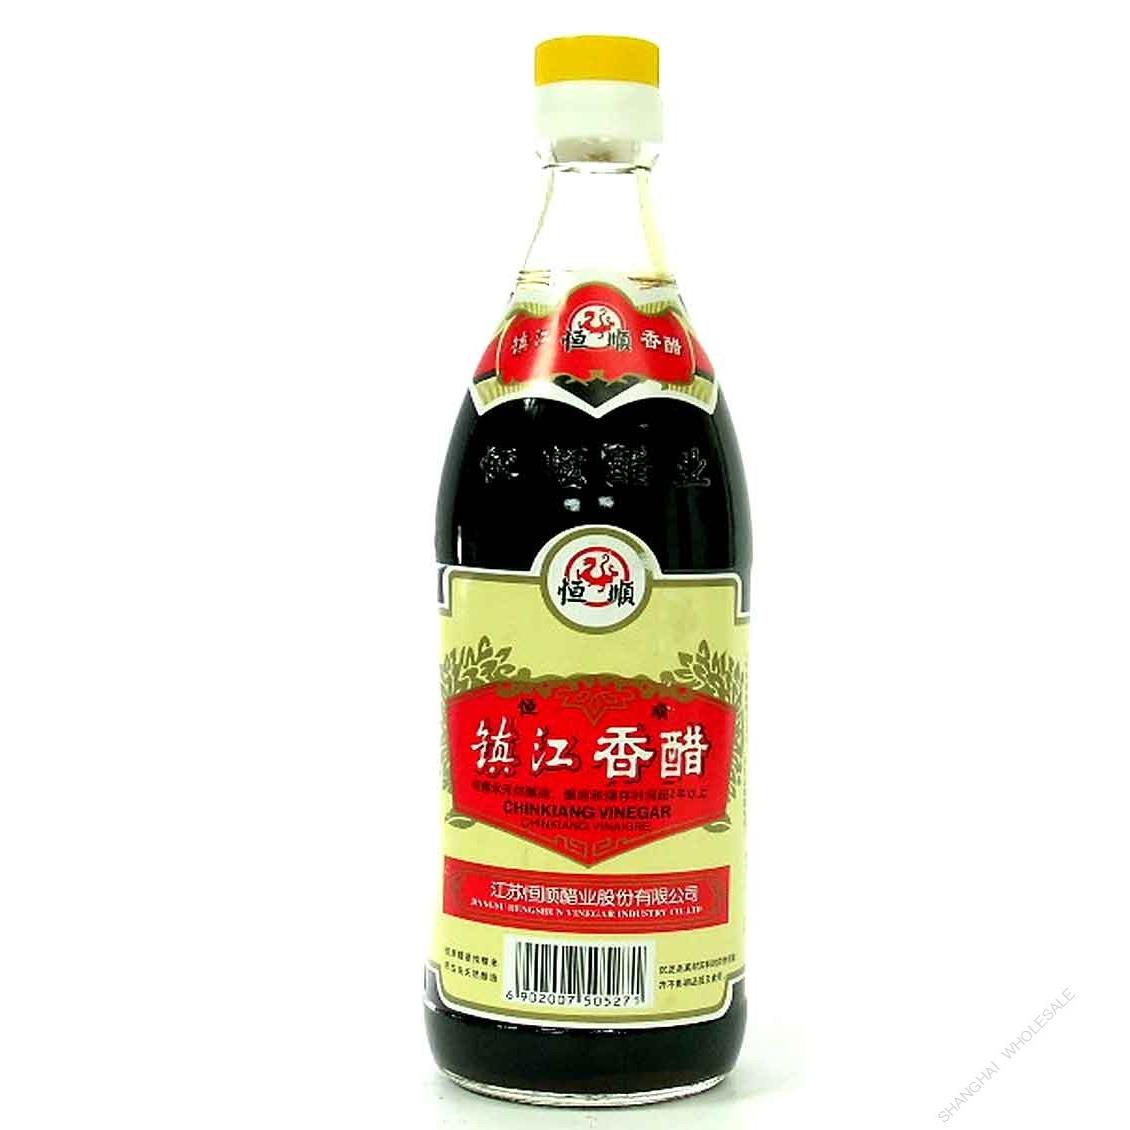 Chinkiang/Zhenjiang Vinegar - Hengshun brand 550 mL